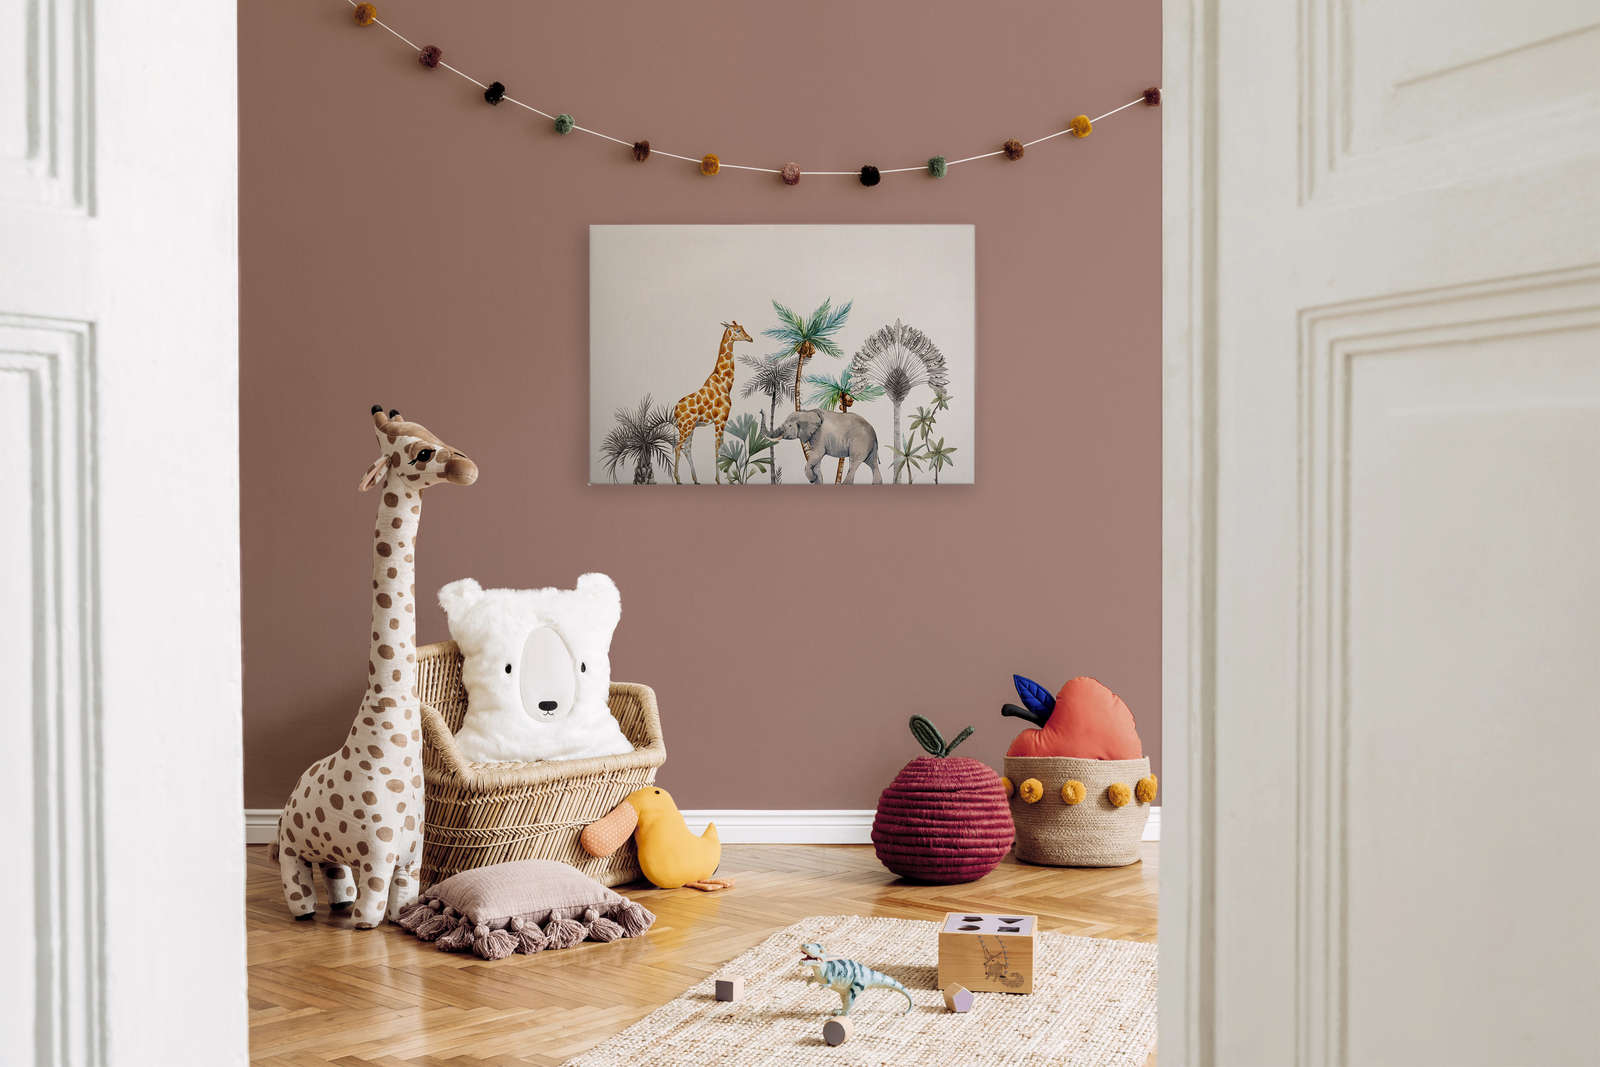             Cuadro en lienzo para habitación infantil con animales y árboles - 0,90 m x 0,60 m
        